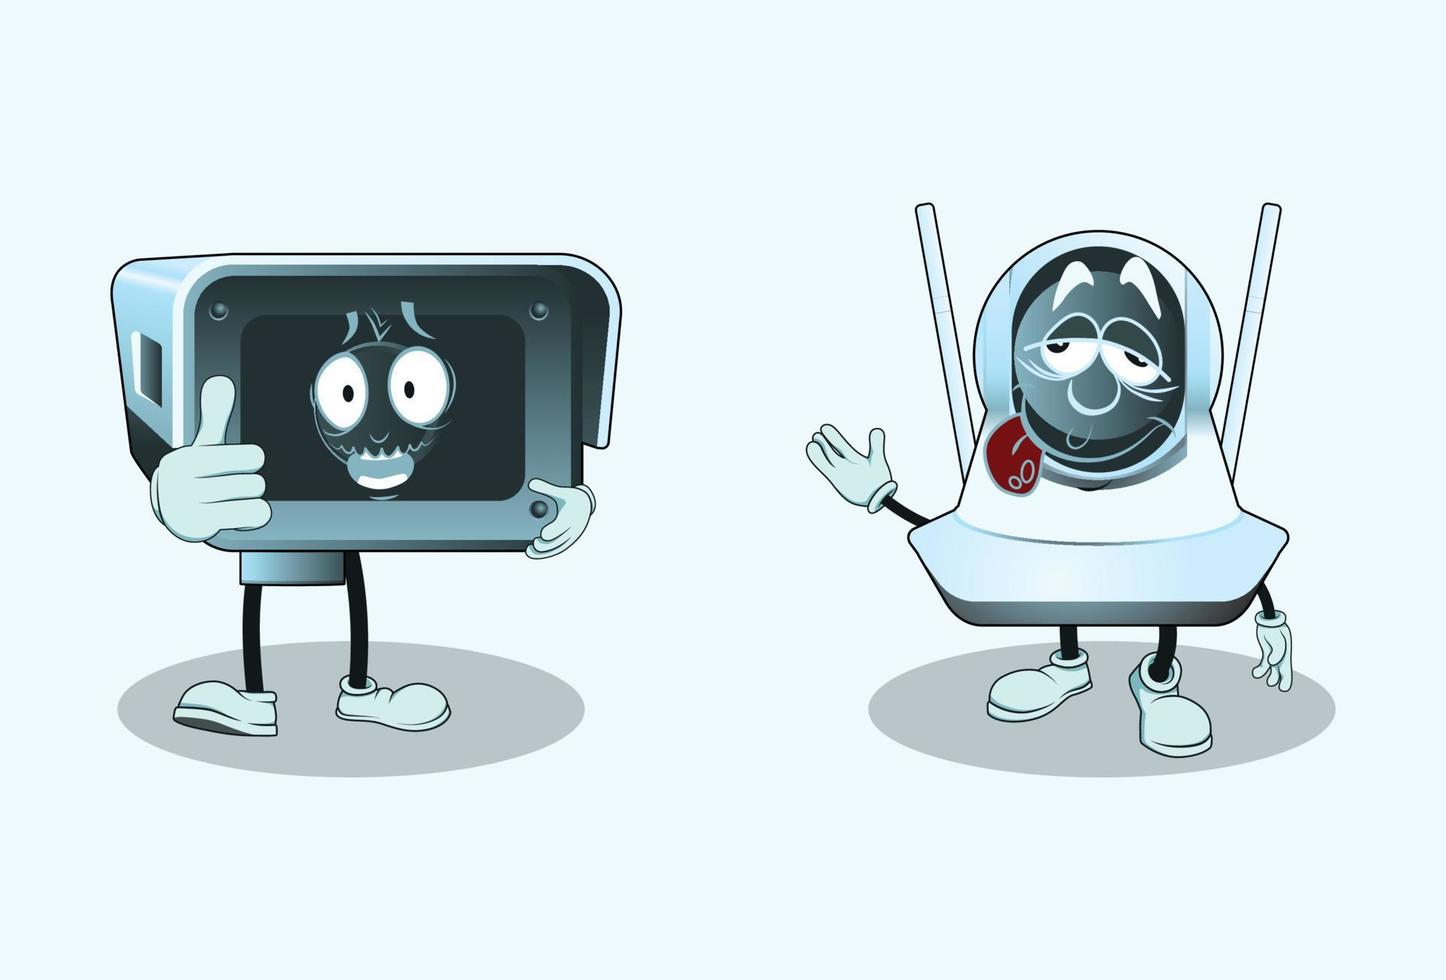 personnages de dessins animés de vidéosurveillance avec expression du visage vecteur